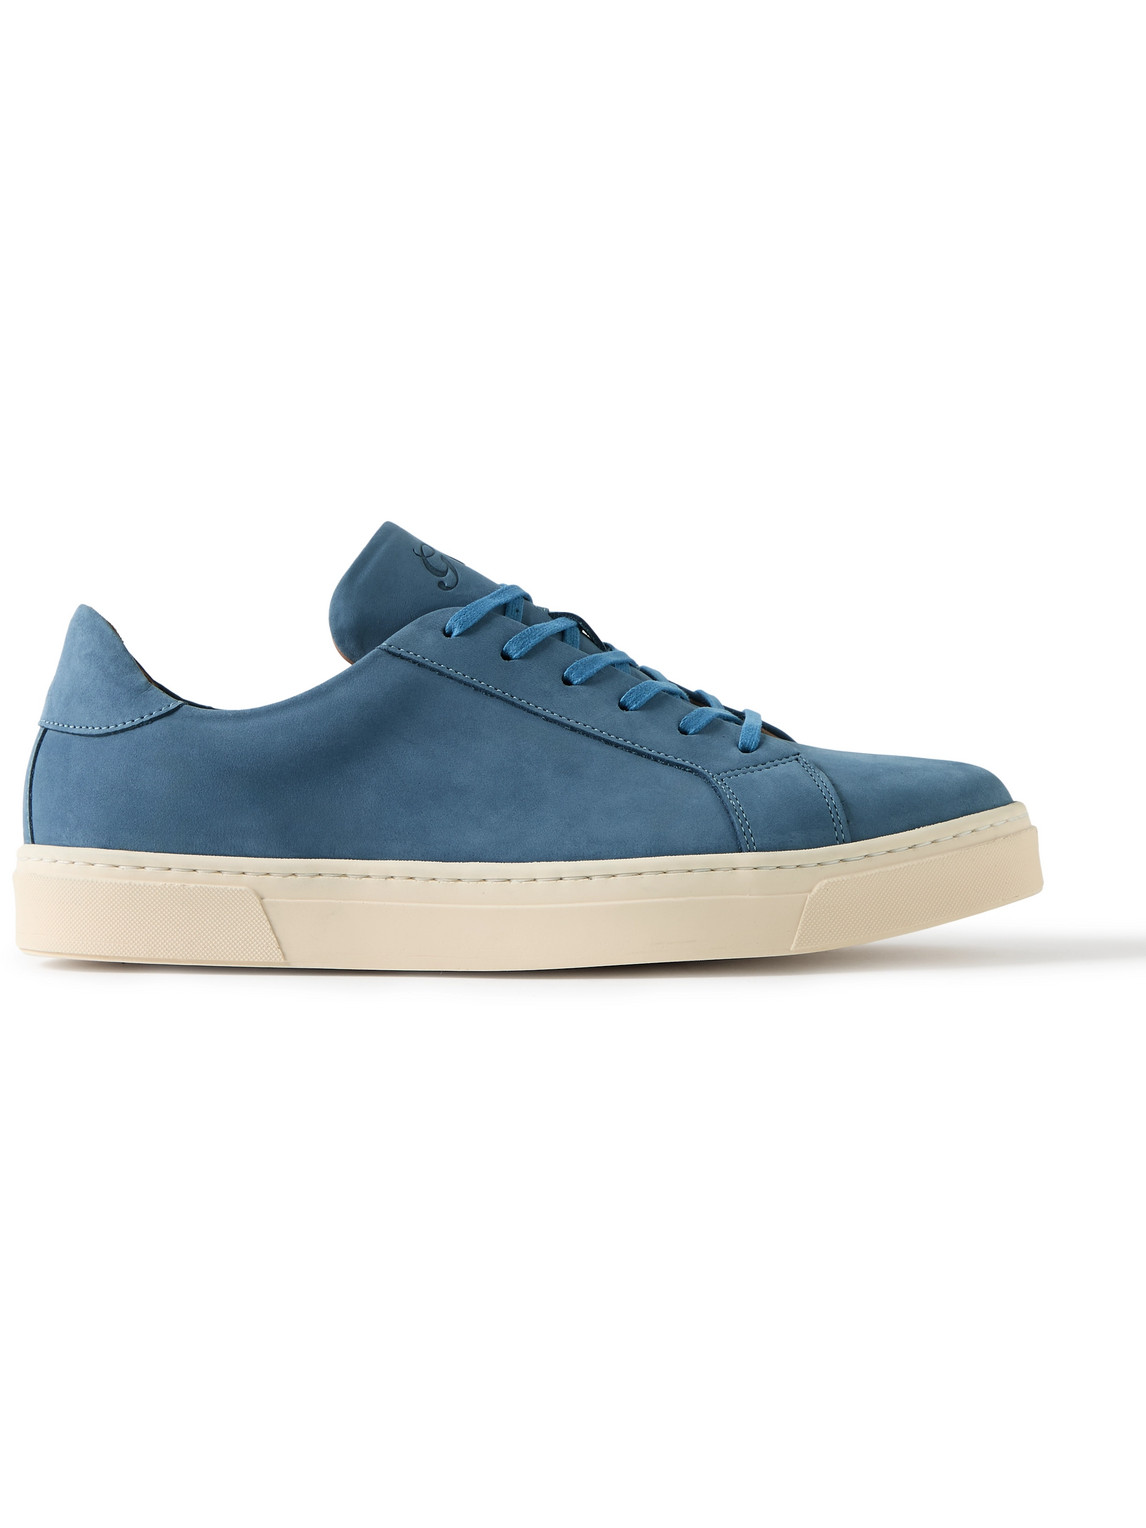 George Cleverley Jack Ii Nubuck Sneakers In Blue